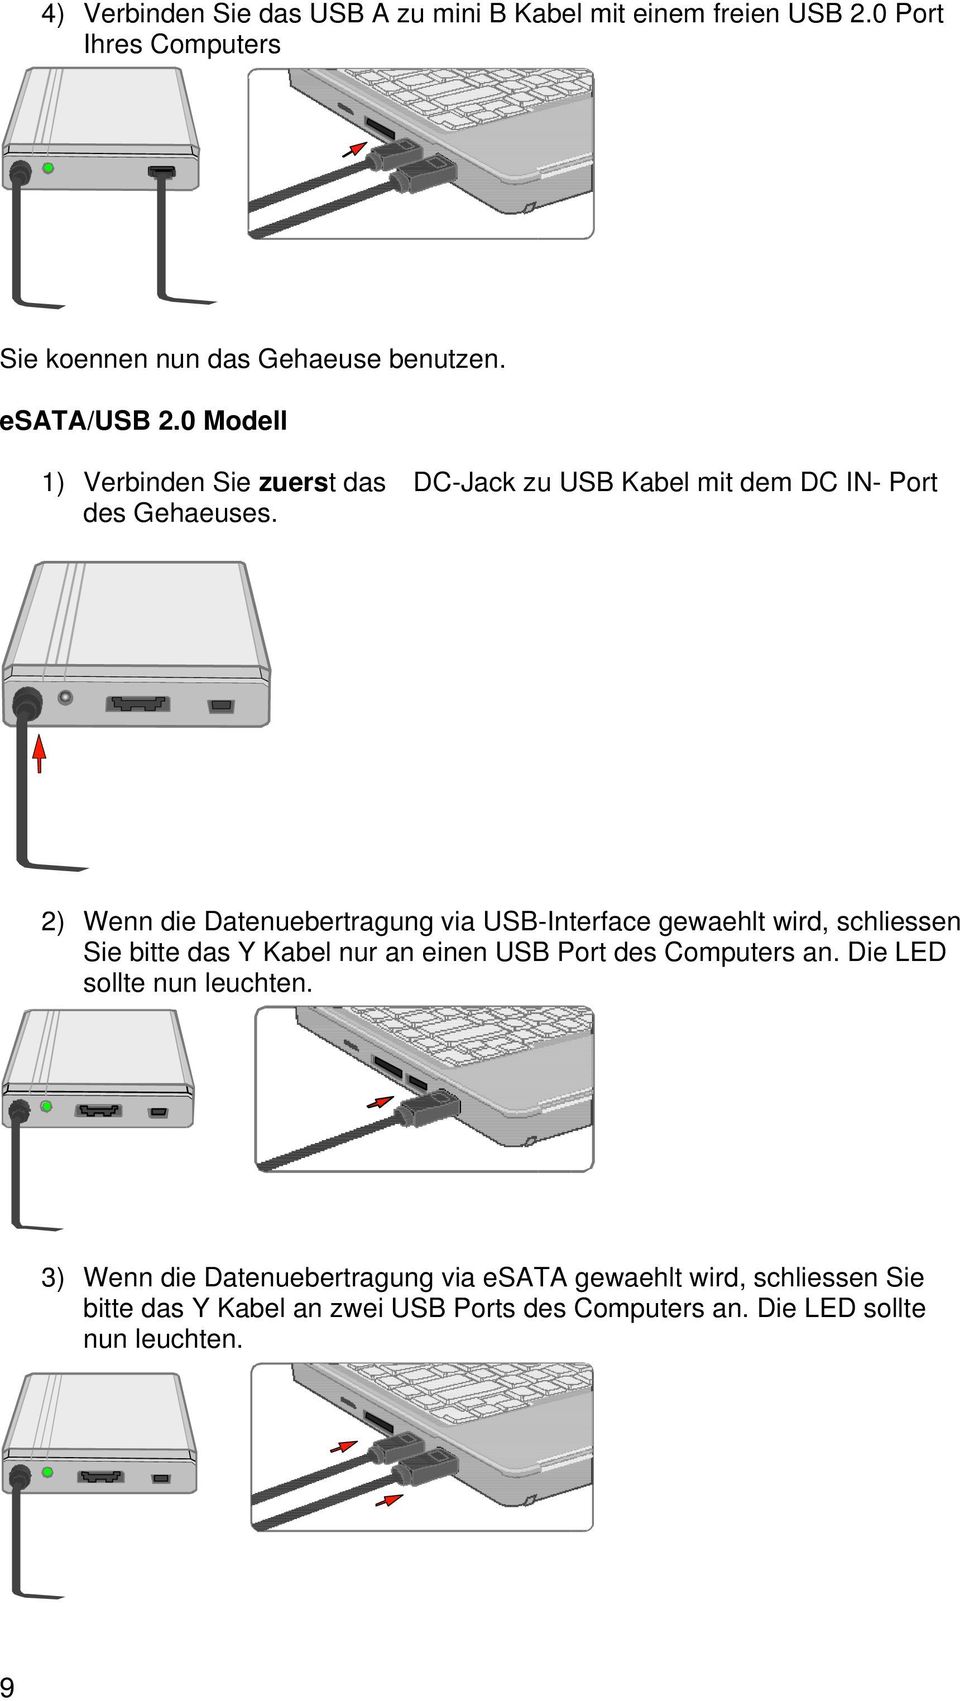 2) Wenn die Datenuebertragung via USB-Interface gewaehlt wird, schliessen Sie bitte das Y Kabel nur an einen USB Port des Computers an.